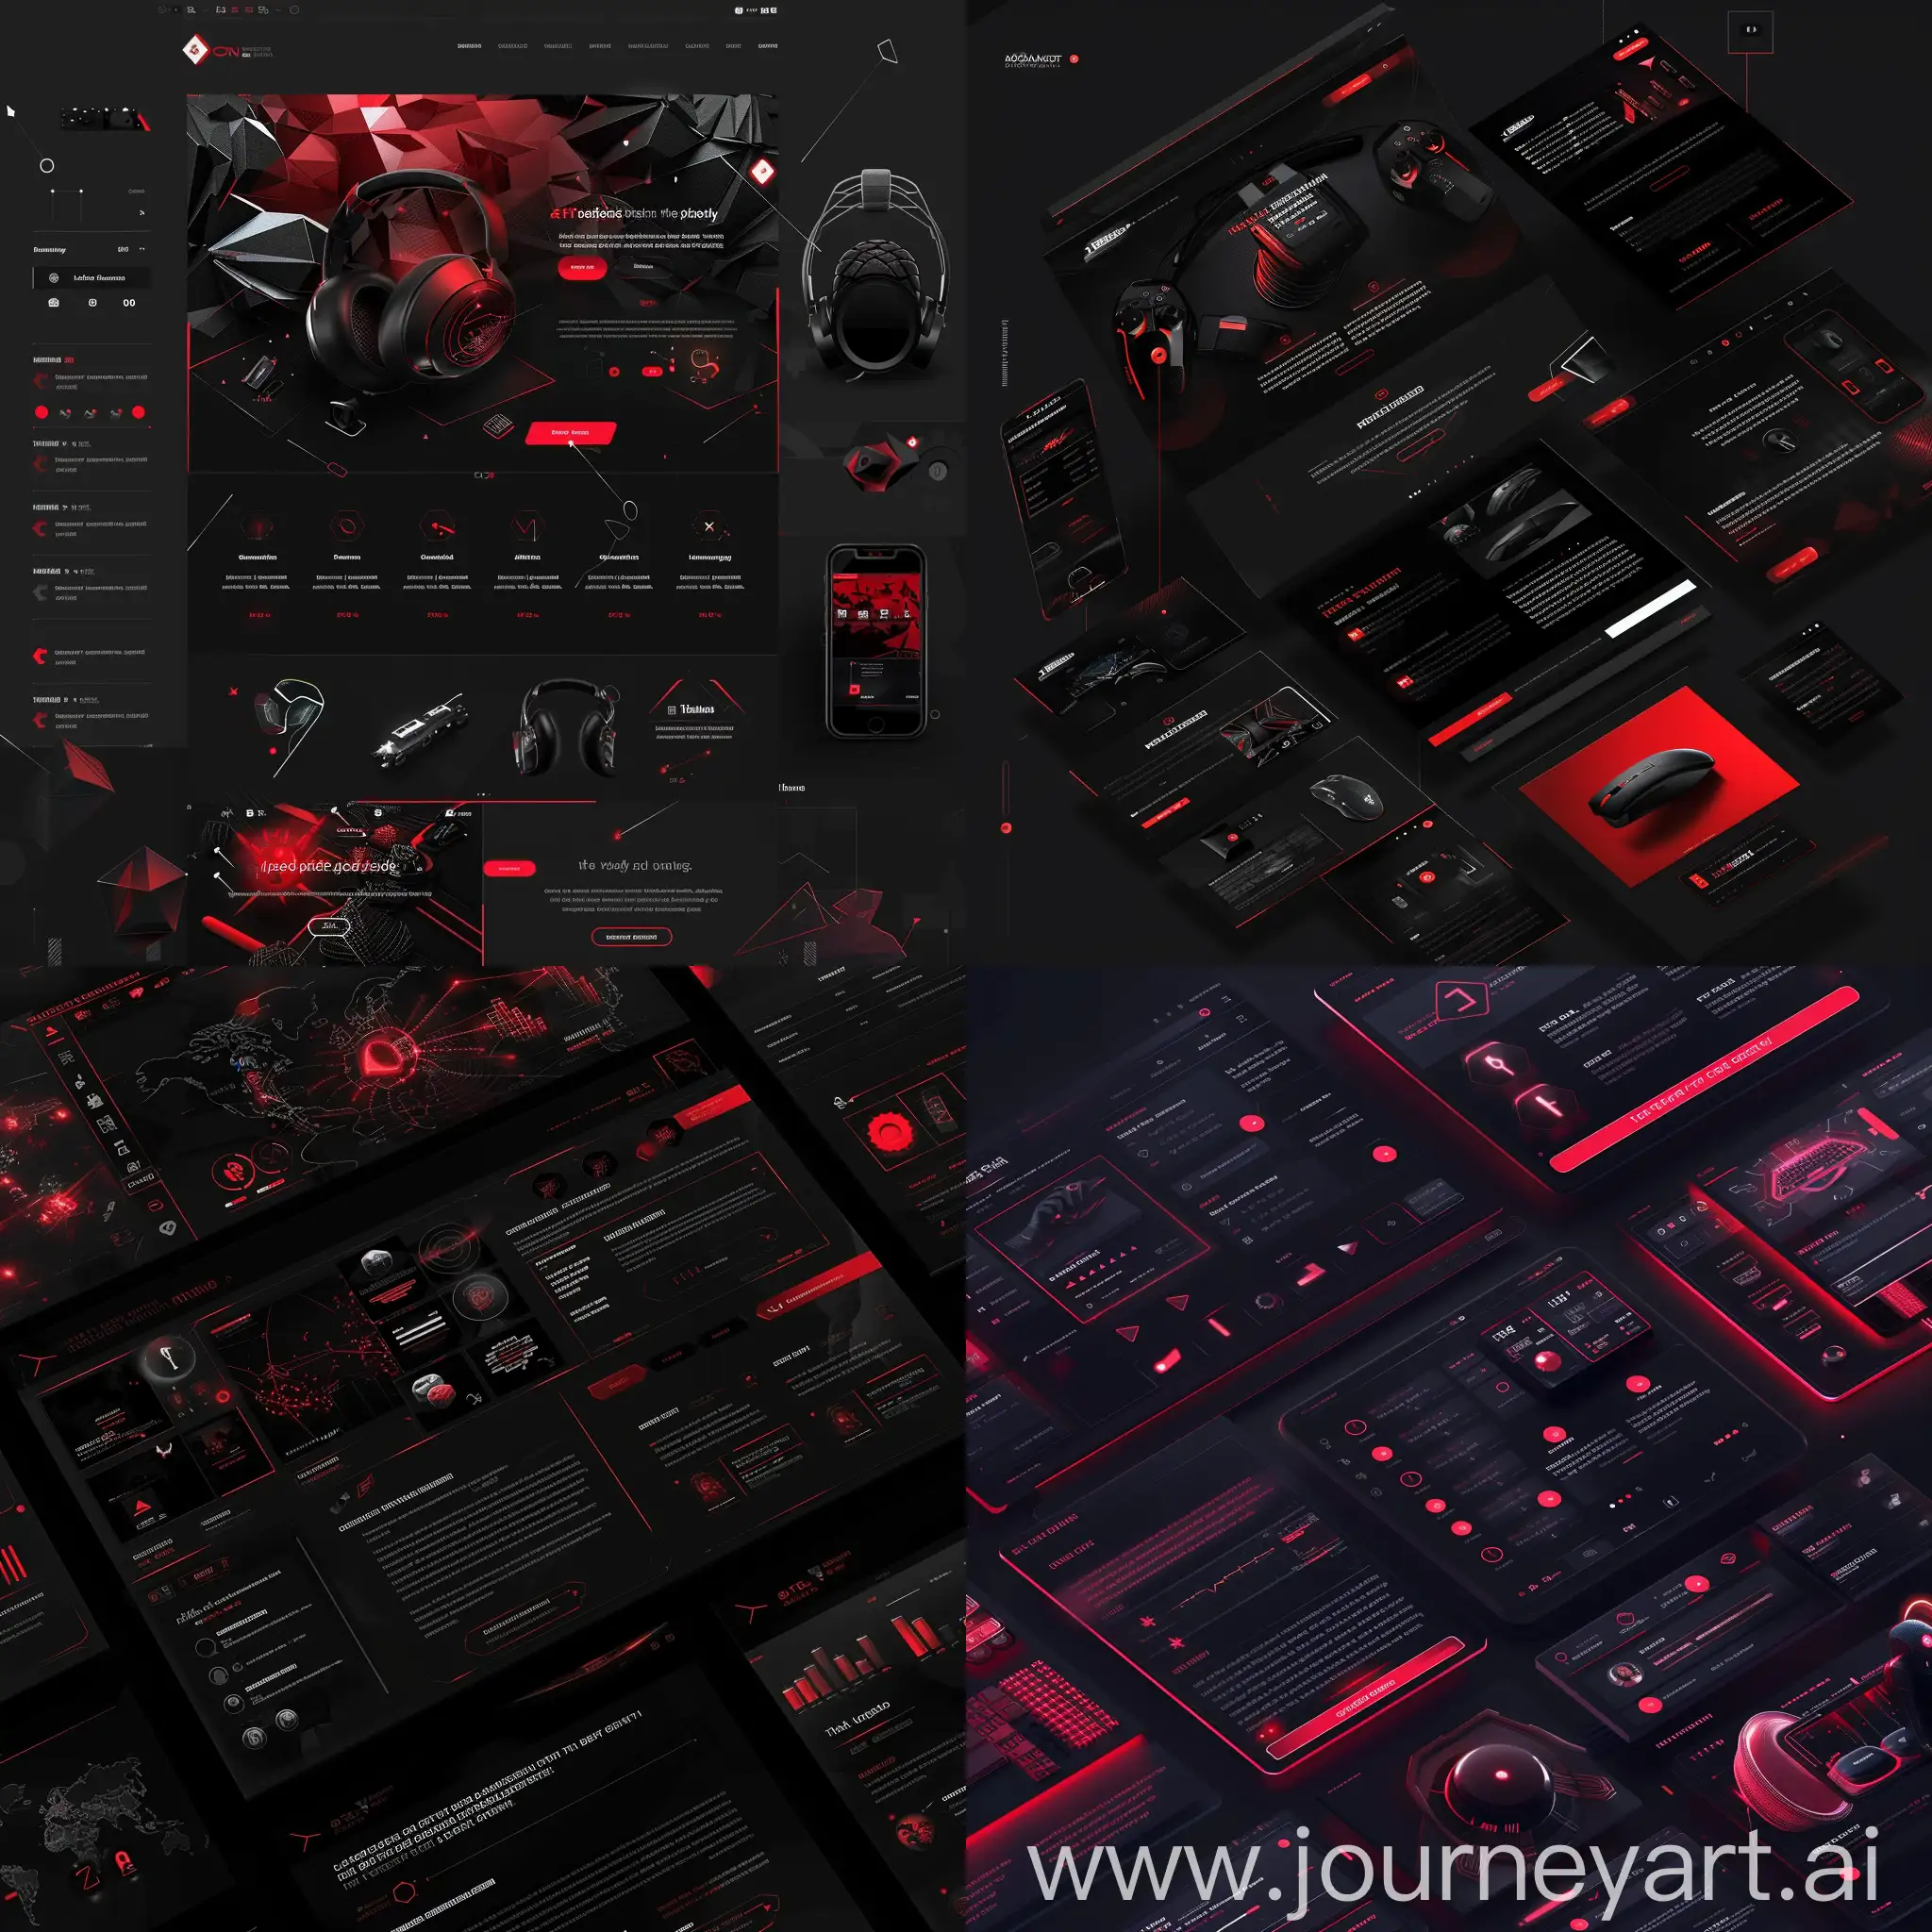 Futuristic-Neon-Website-Design-in-Dark-Tones-with-3D-Icons